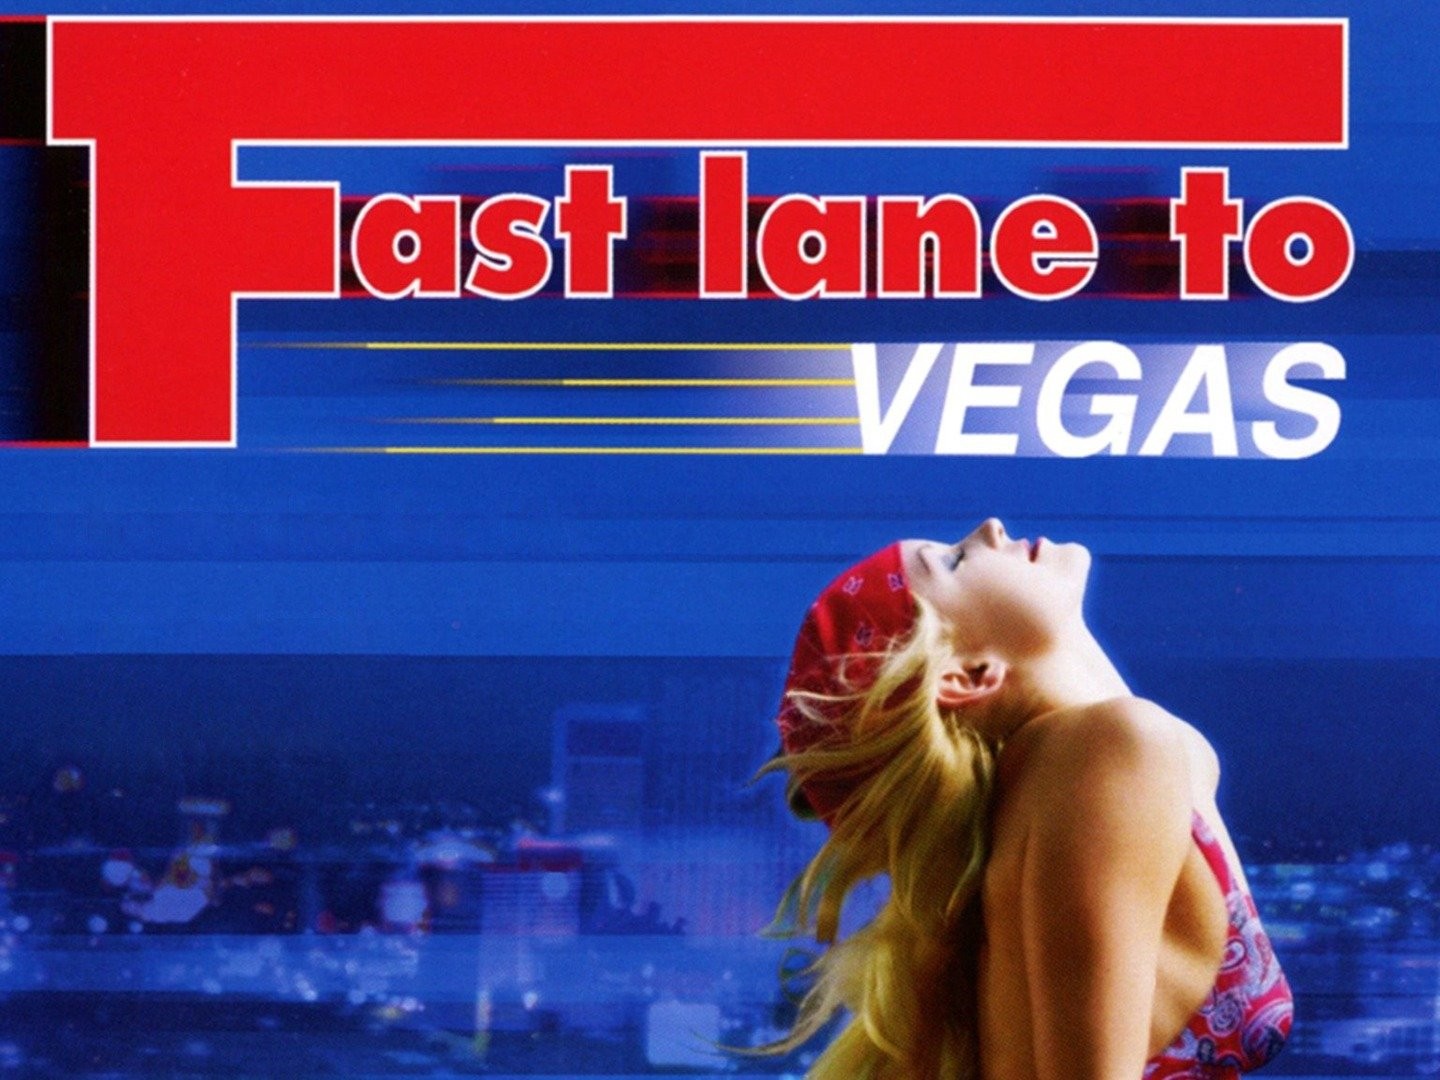 Fast lane to vegas 2000